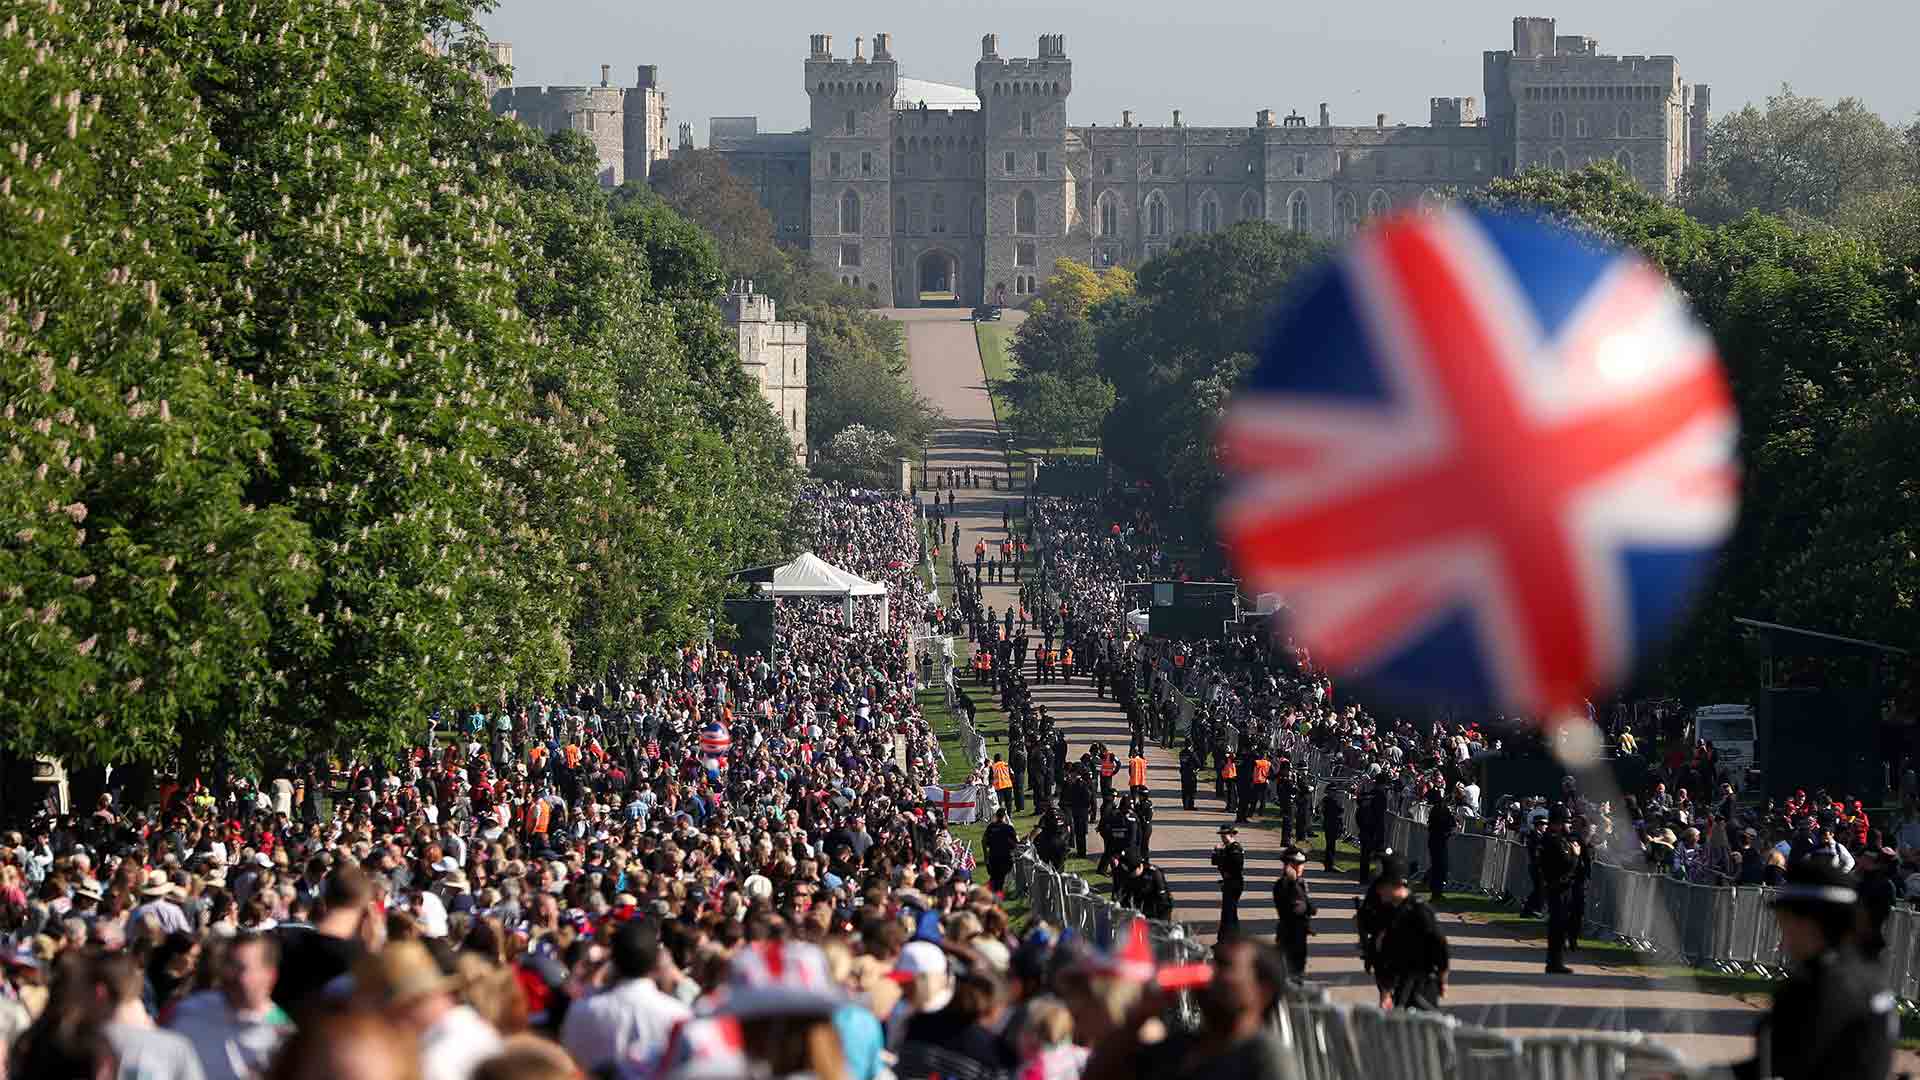 El príncipe Harry y Meghan Markle se casan bajo una expectación que se extiende de Windsor a todo el mundo